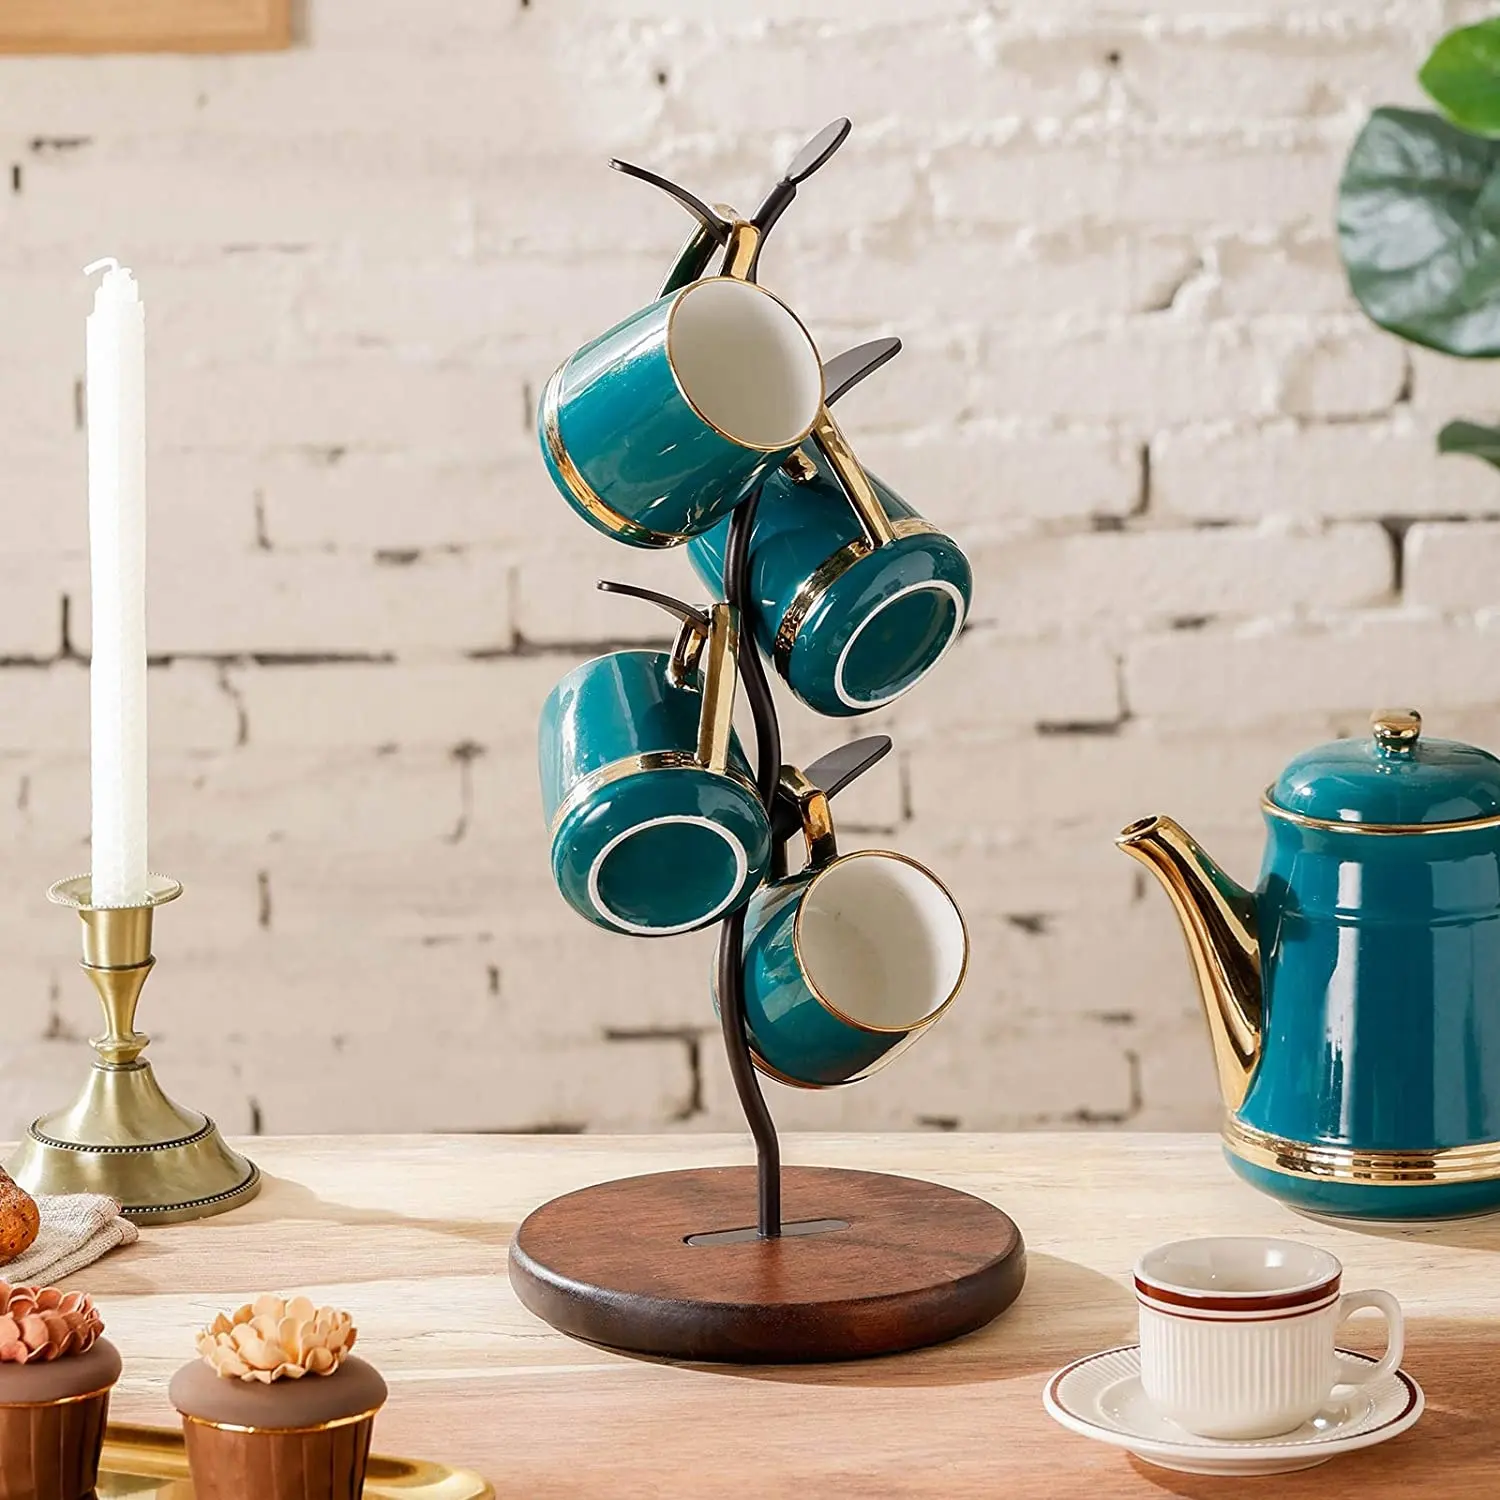 Soporte para tazas de café, soporte para encimera en forma de árbol, soporte de Metal de diseño atractivo, Base de madera, soporte de cocina